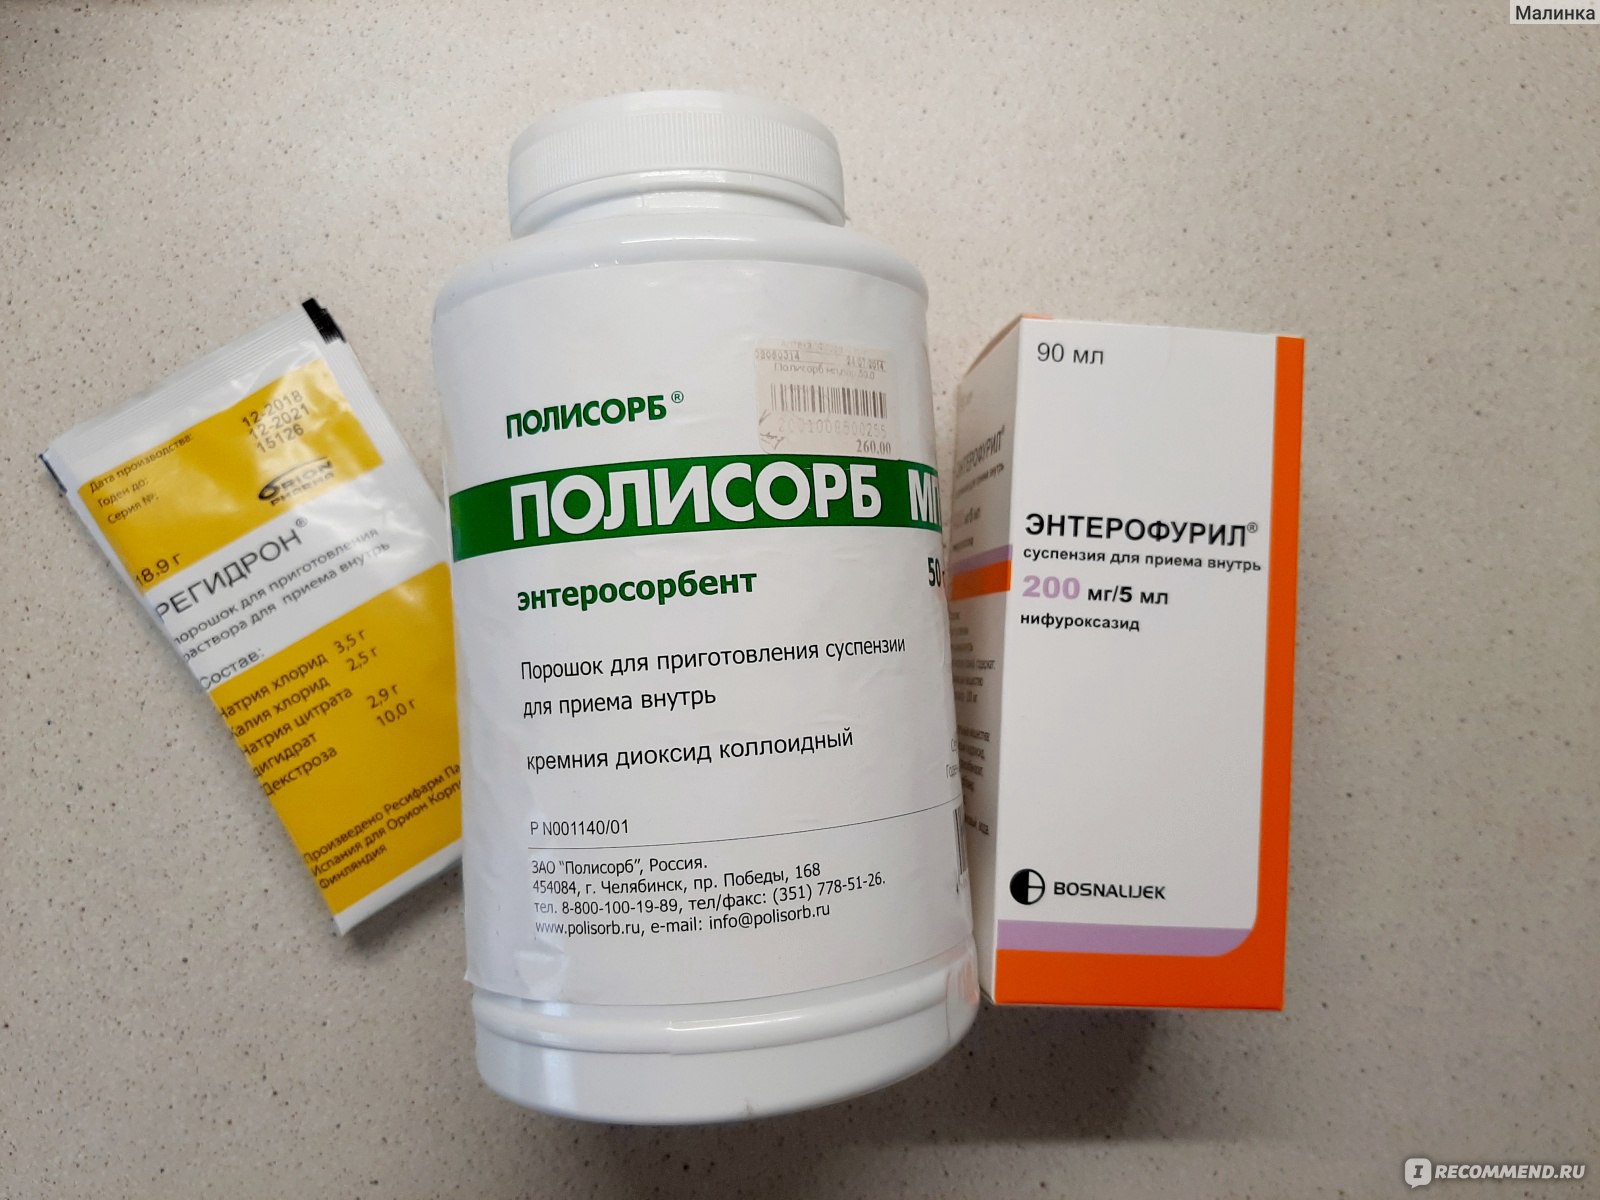 5 эффективных препаратов от тошноты и рвоты - гастроэнтерология, проктология - статьи - поиск лекарств